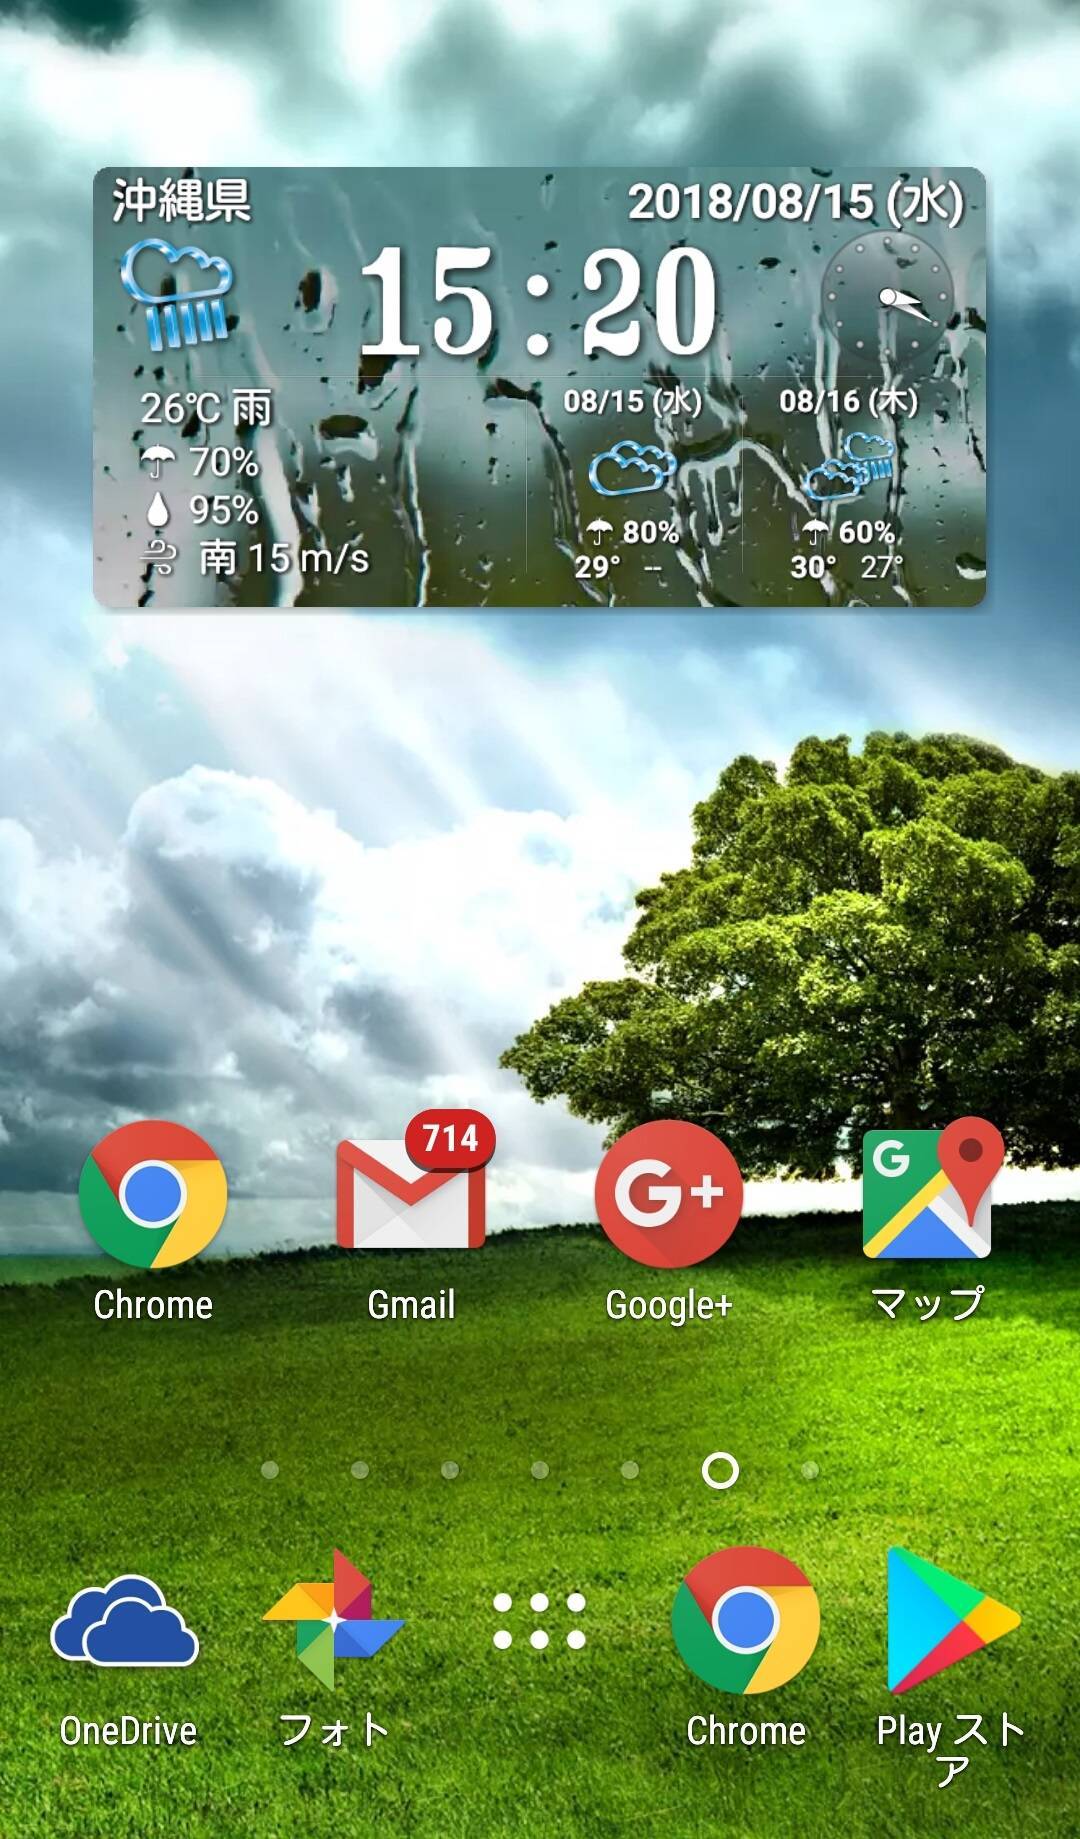 Android天気ウィジェットおすすめ6選 便利でオシャレにホーム画面を大改造の画像 7枚目 Appliv Topics